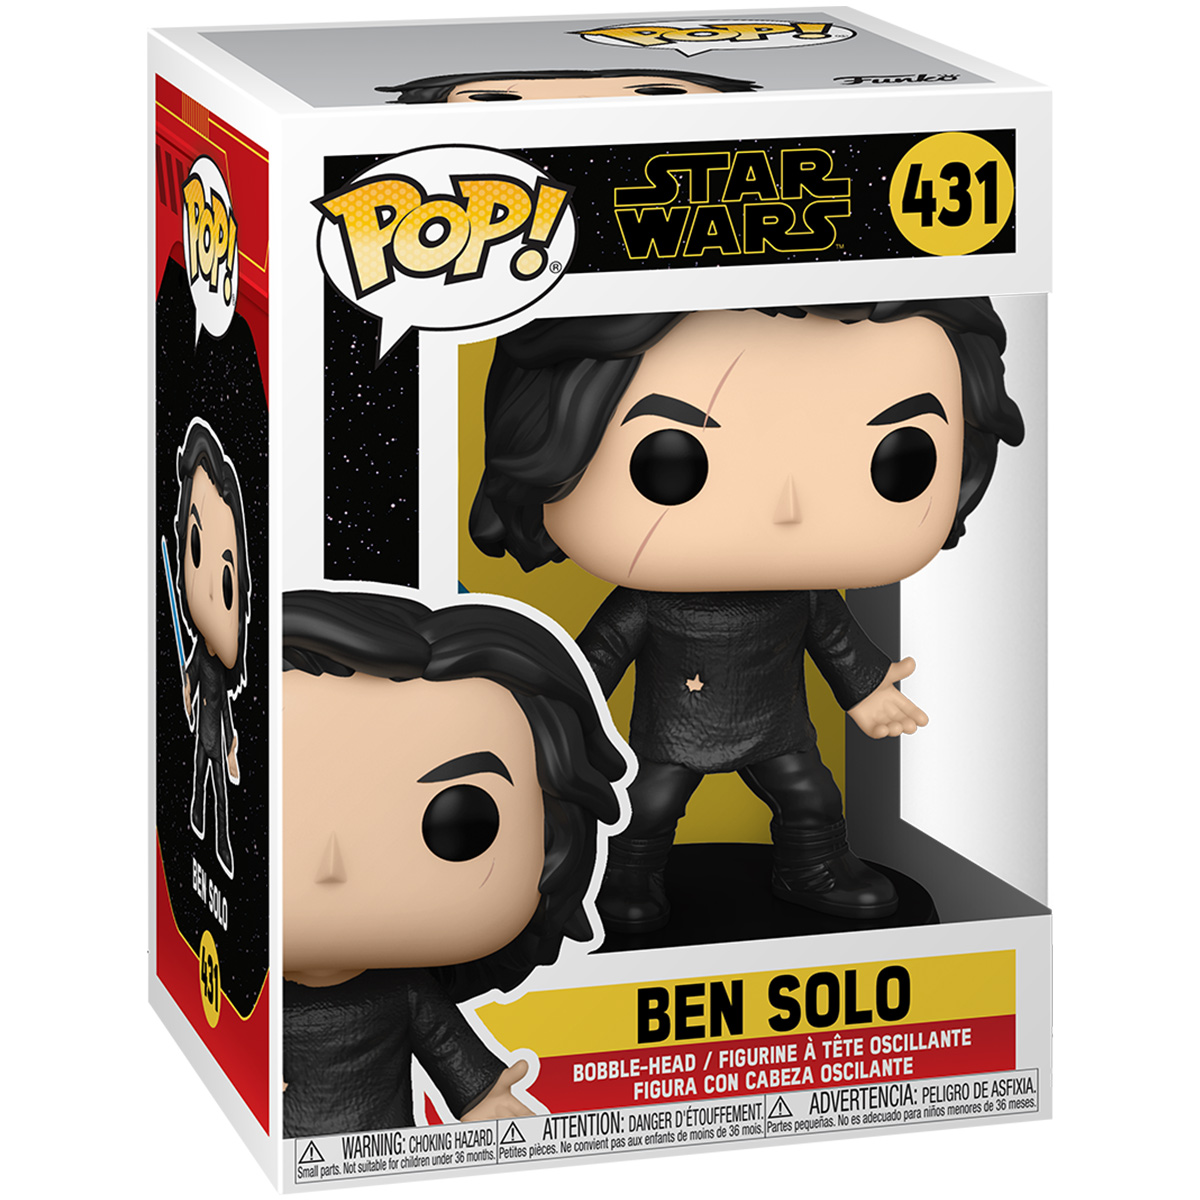 Ben Solo #431 - Star Wars - Funko Pop!